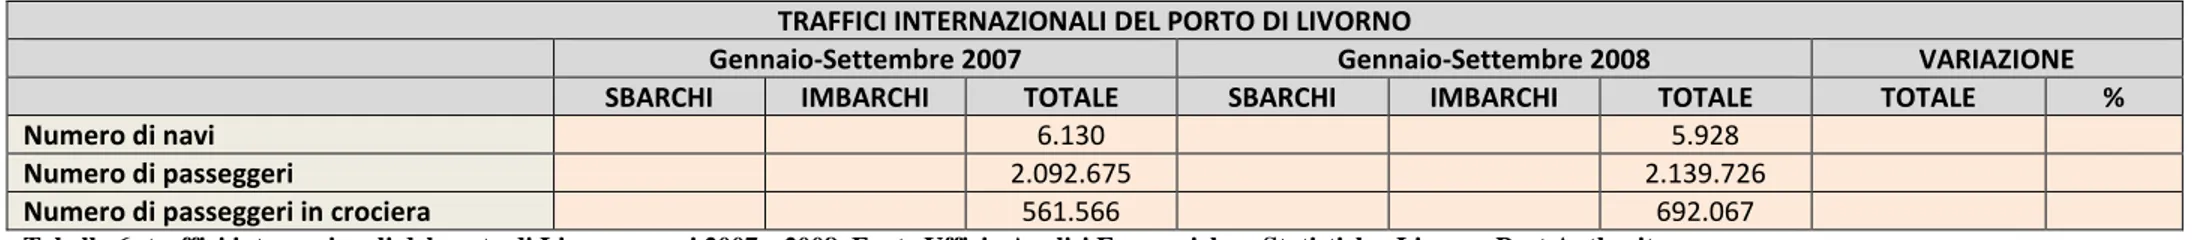 Tabella 6: traffici internazionali del porto di Livorno, anni 2007 e 2008. Fonte Ufficio Analisi Economiche e Statistiche, Livorno Port Authority.